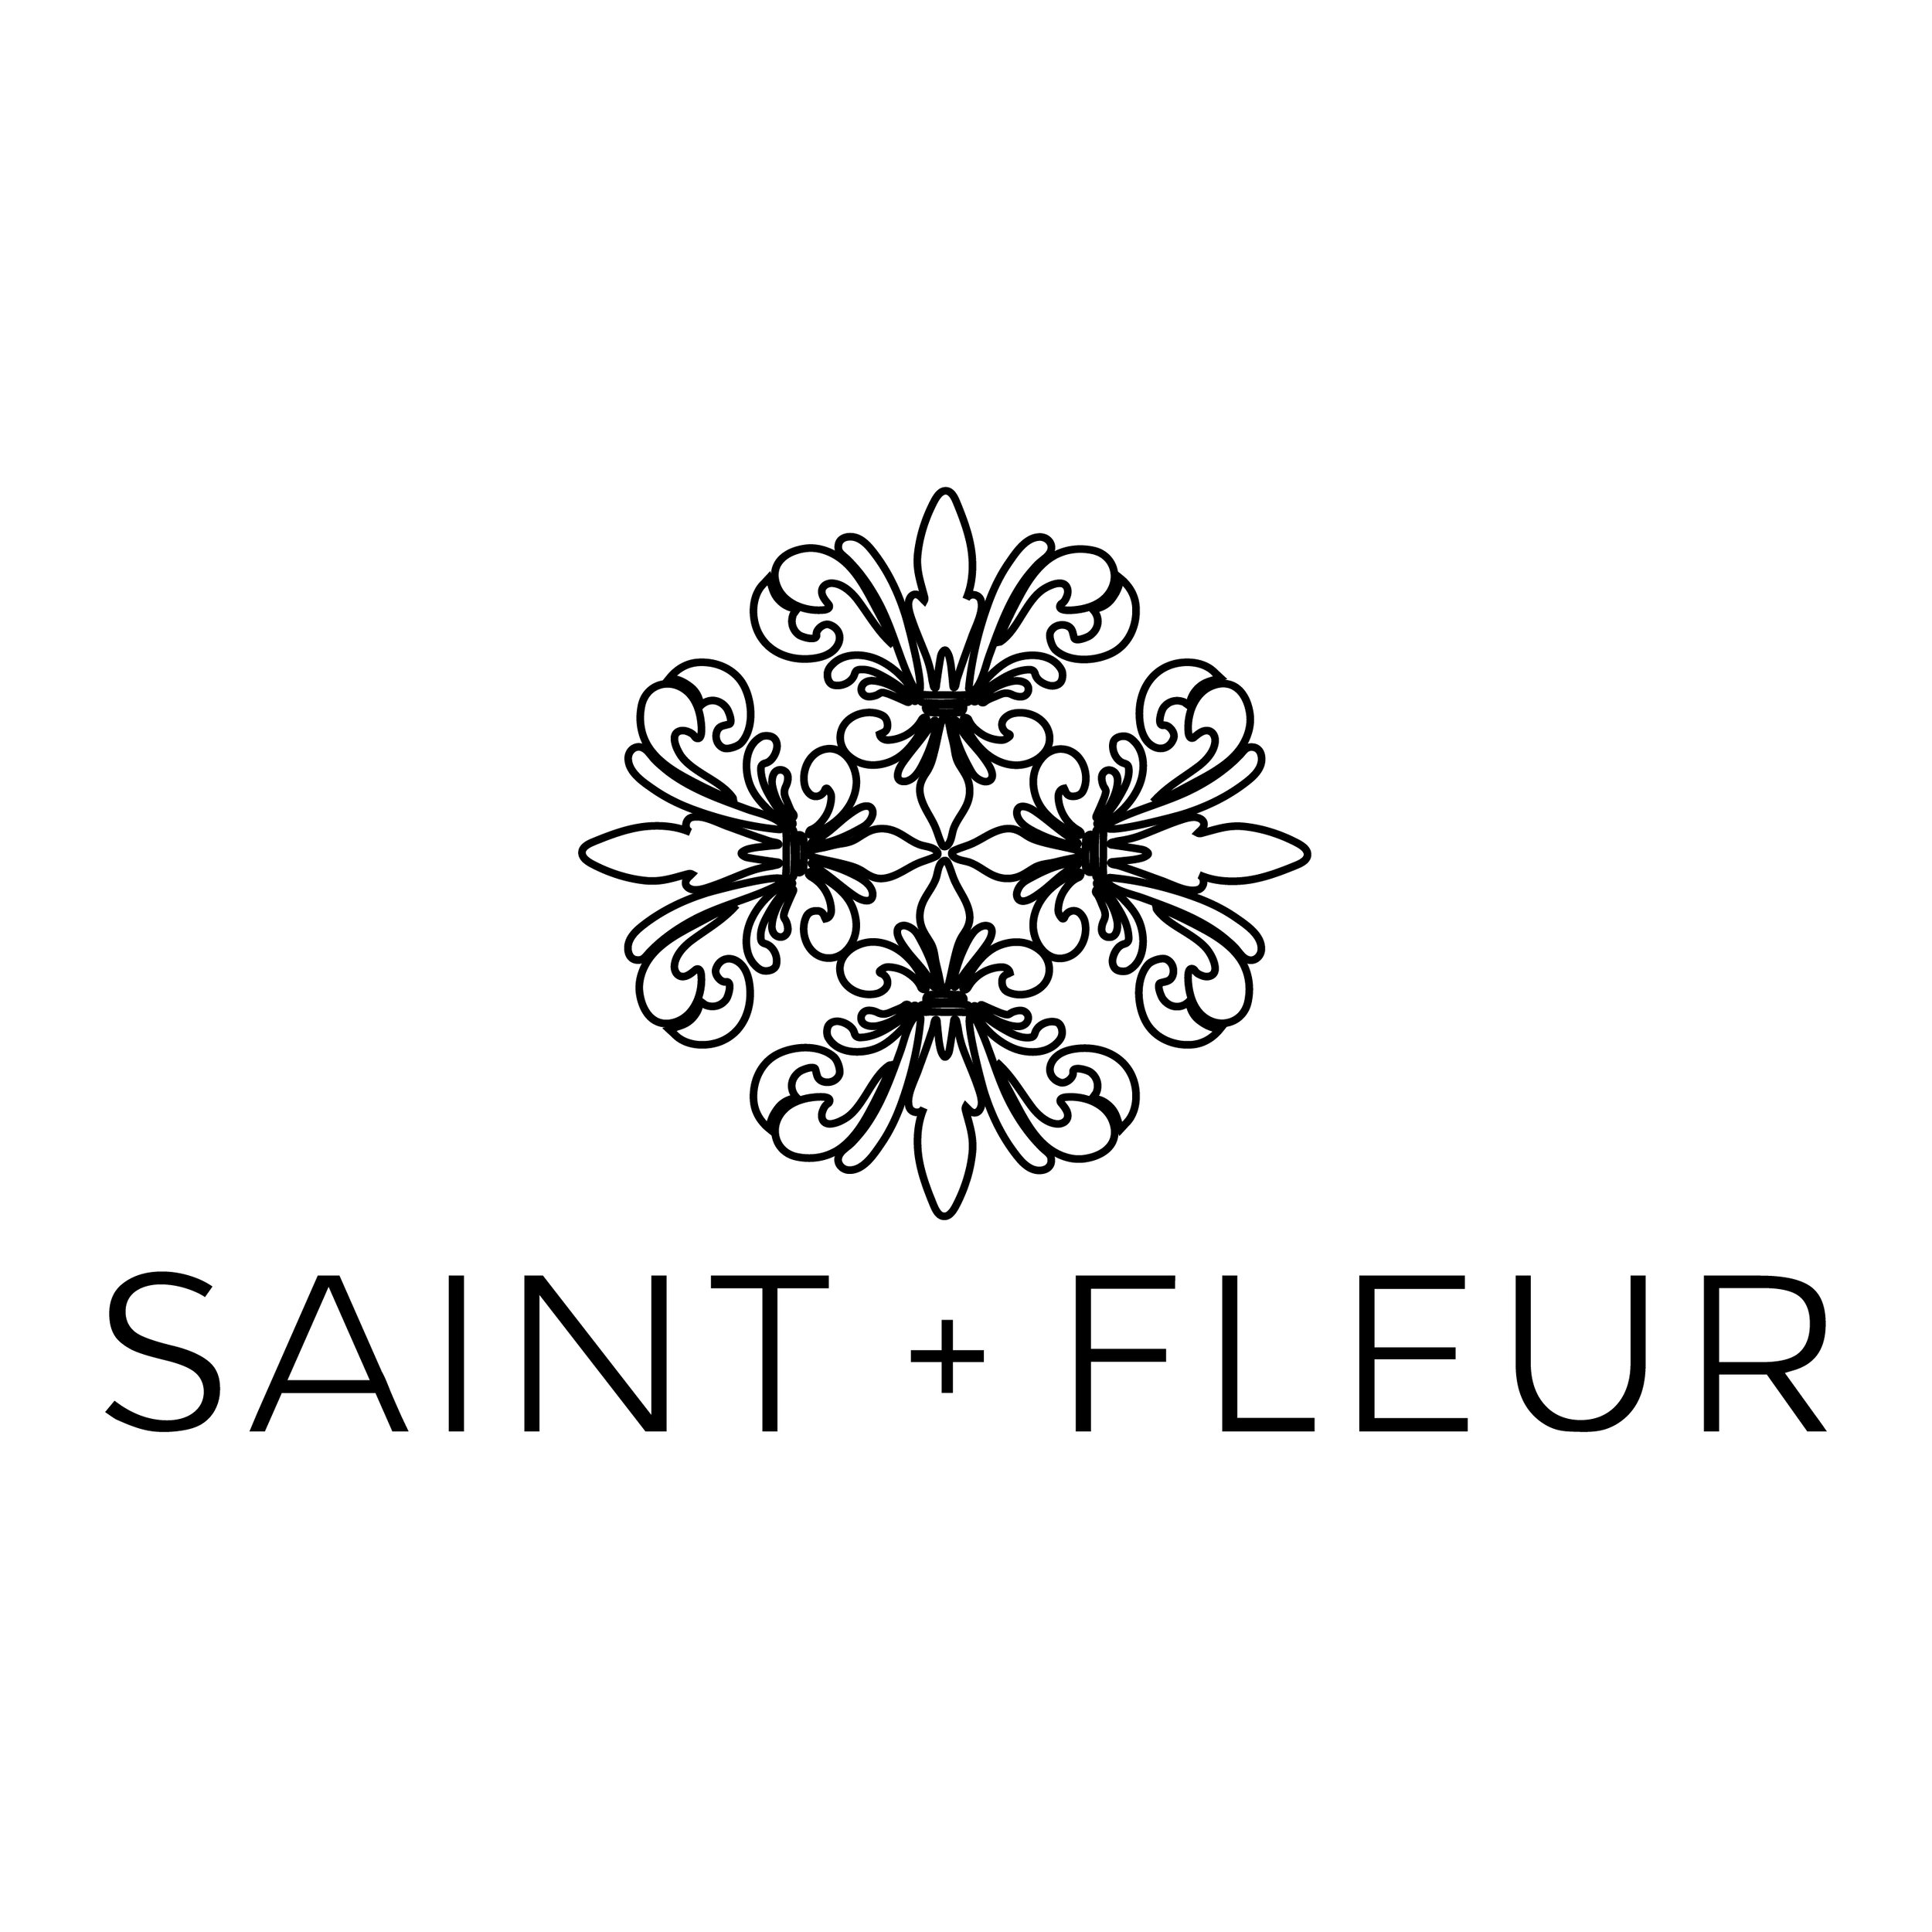 Saint+Fleur Logos_Black Without Tagline.jpg